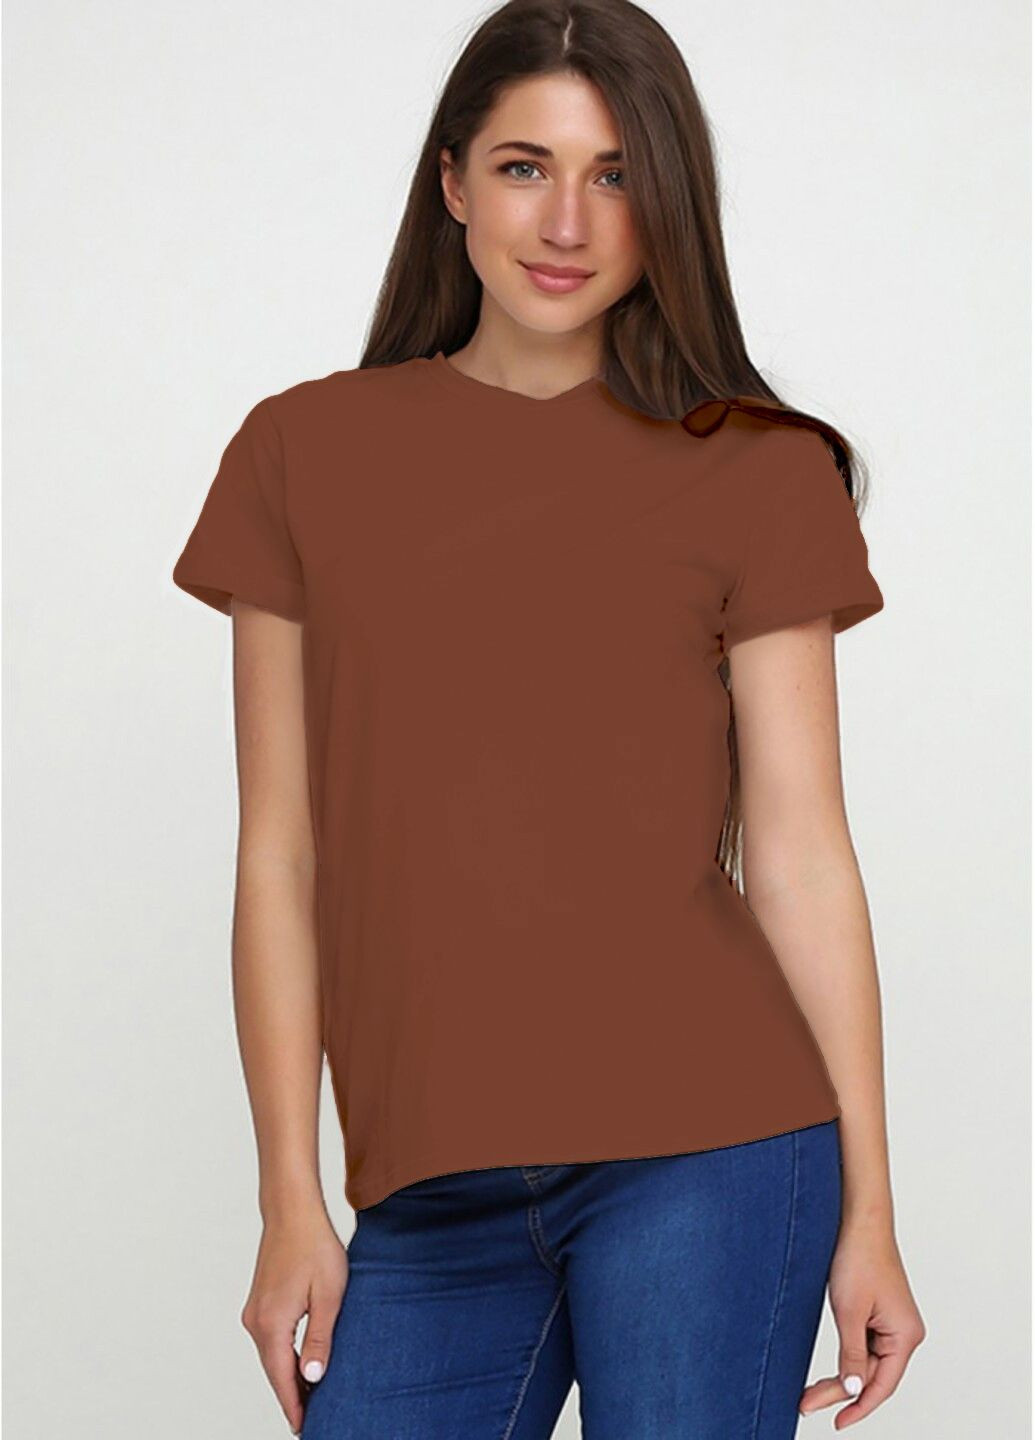 Коричневая женская футболка 563-24 коричневая с коротким рукавом Malta